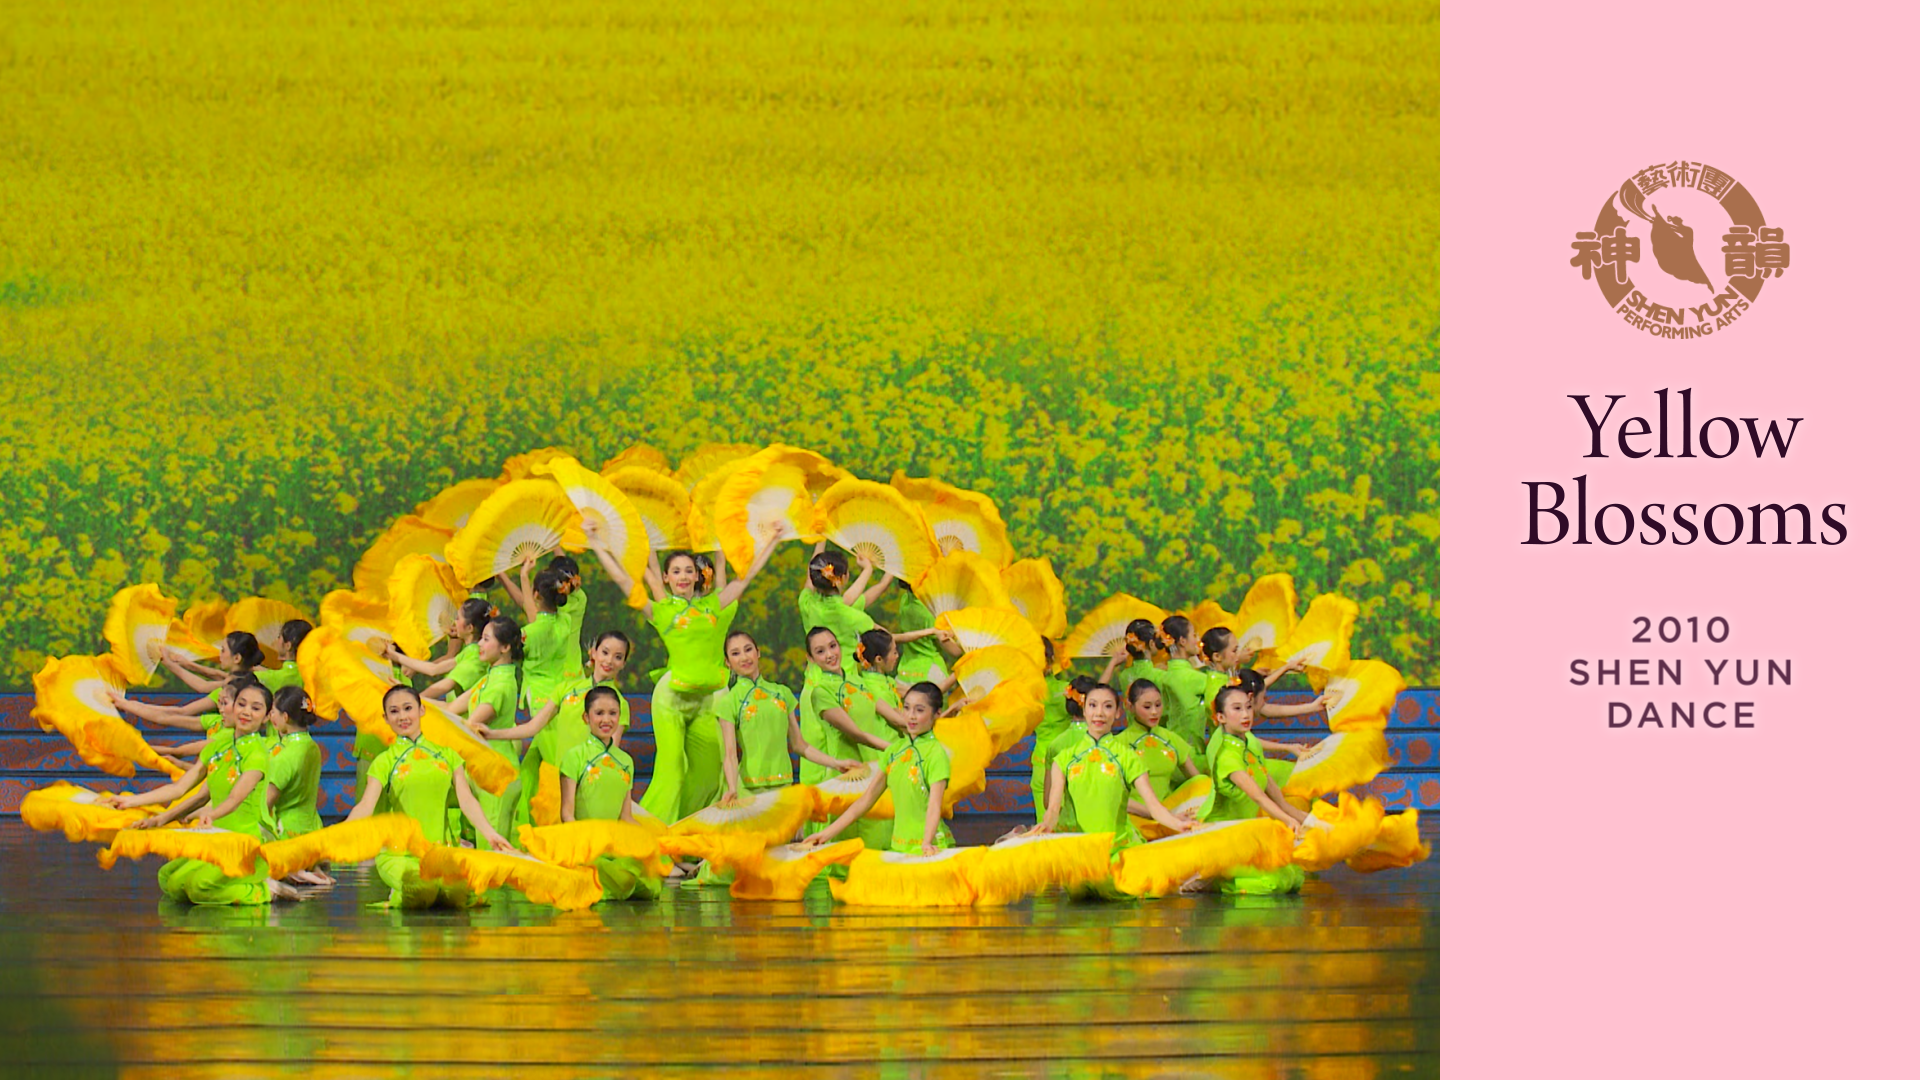 Tác phẩm Shen Yun thời đầu: Hoa vàng (Chương trình năm 2010)